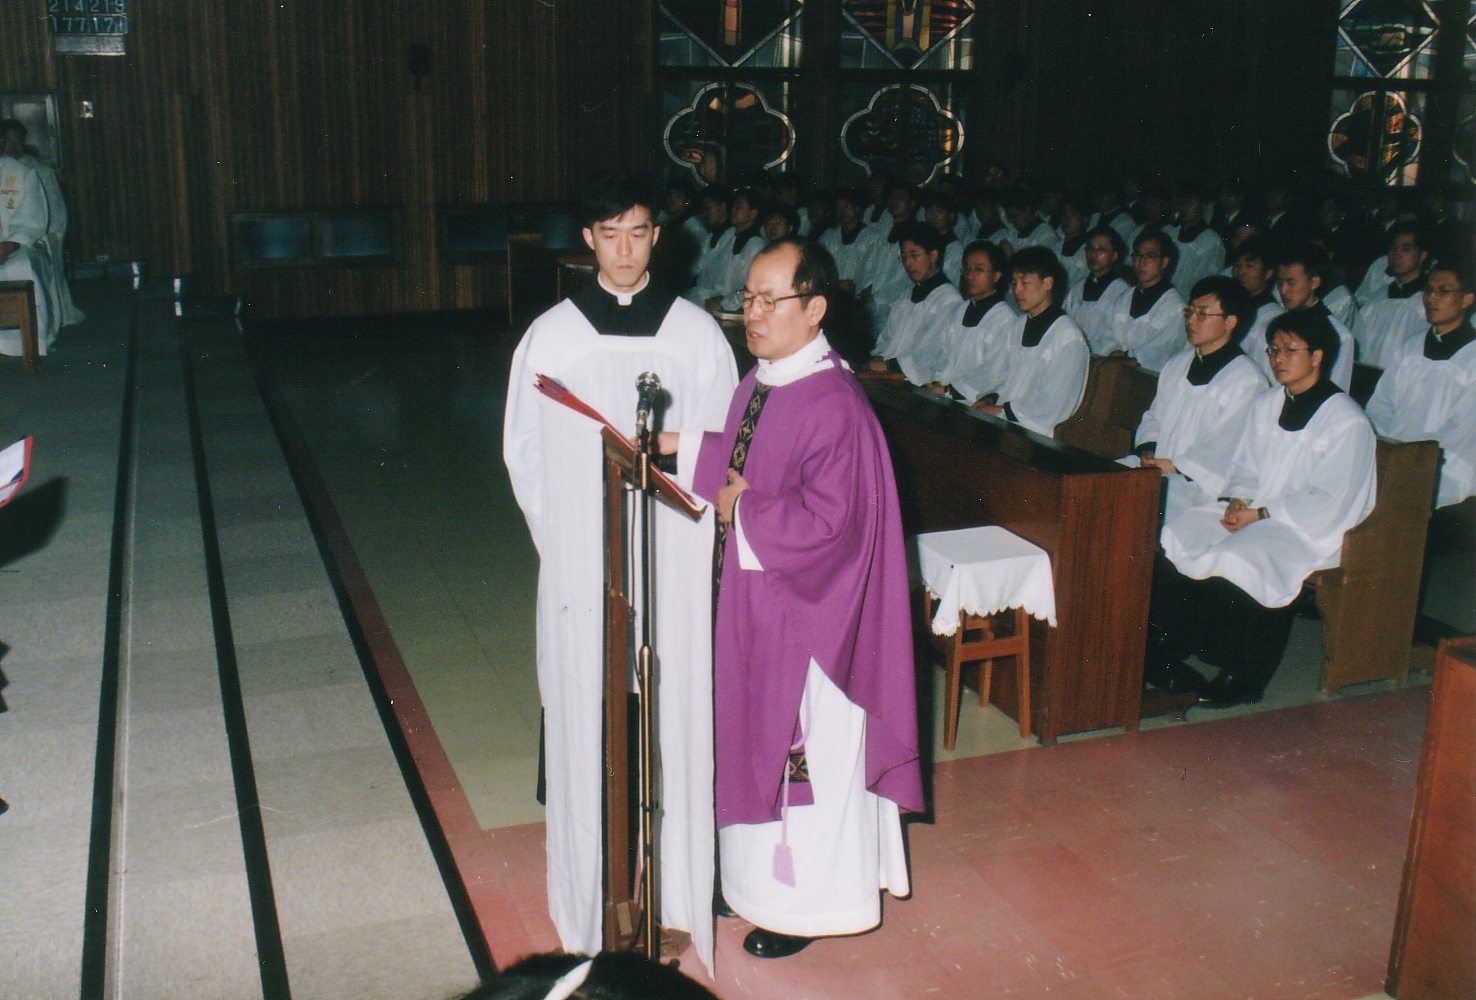 가톨릭대학교 (1995통합 - ) (2)의 관련된 이미지 입니다.